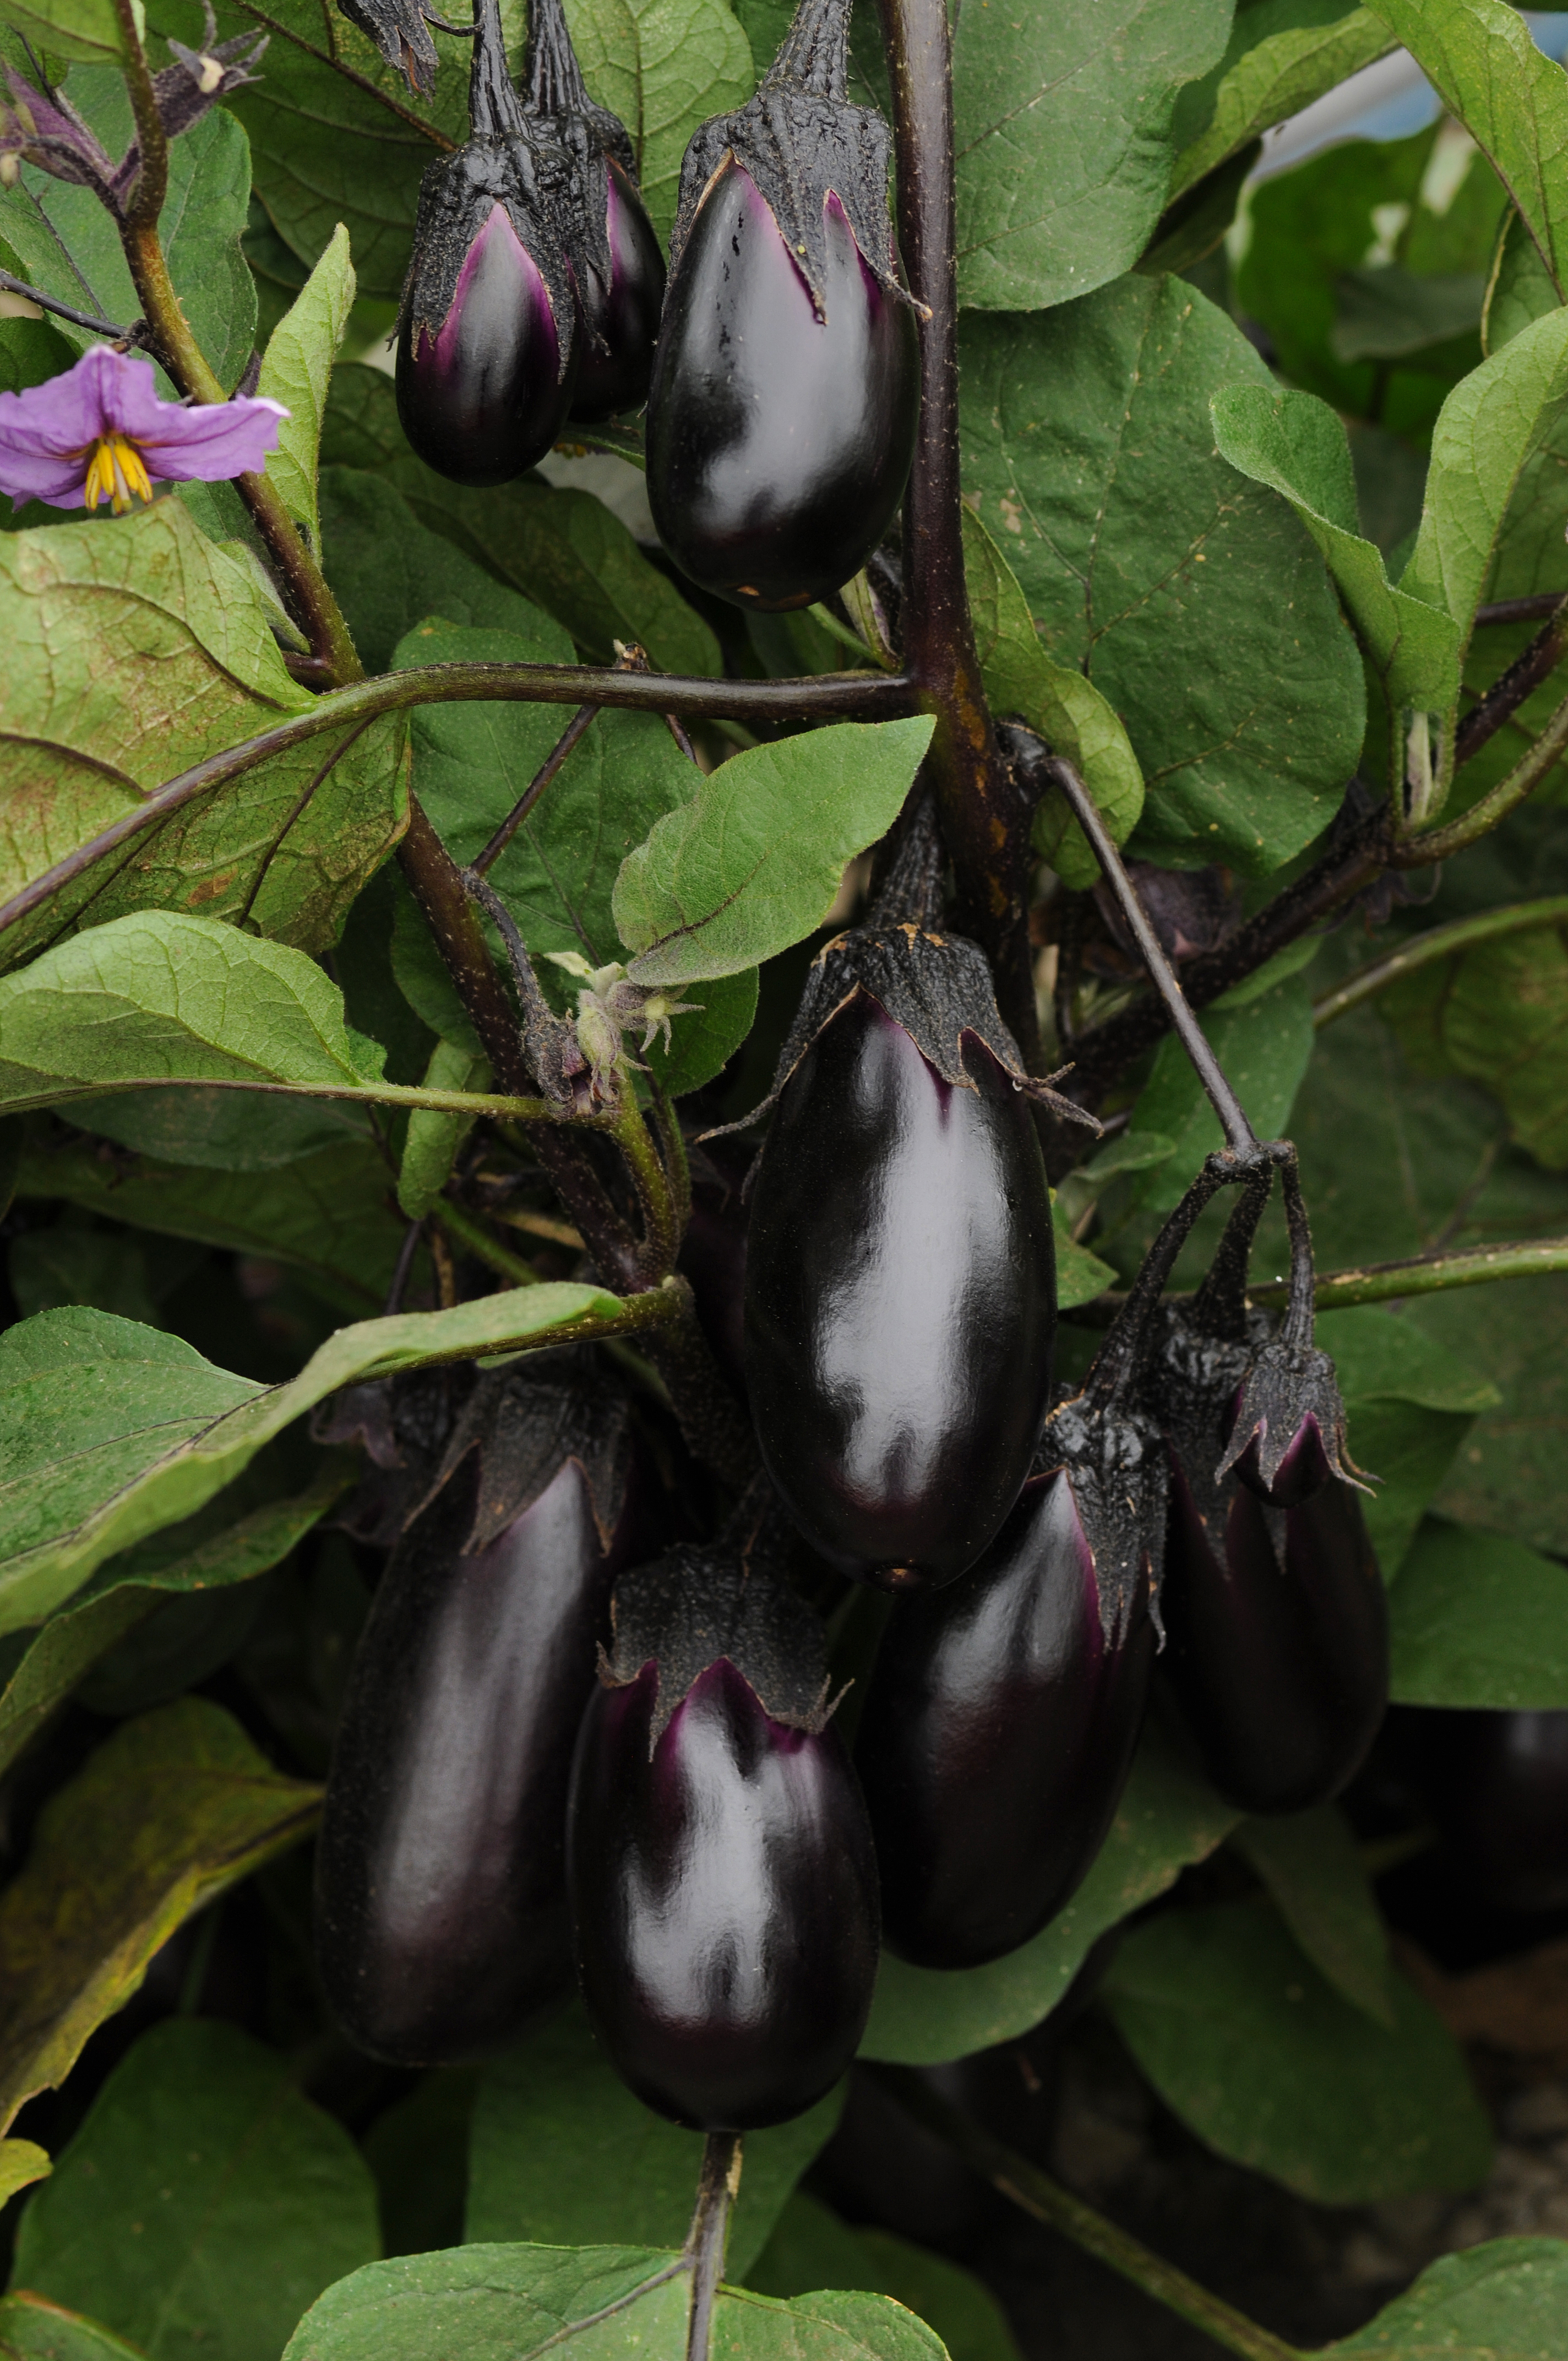 Eggplant - Patio Baby